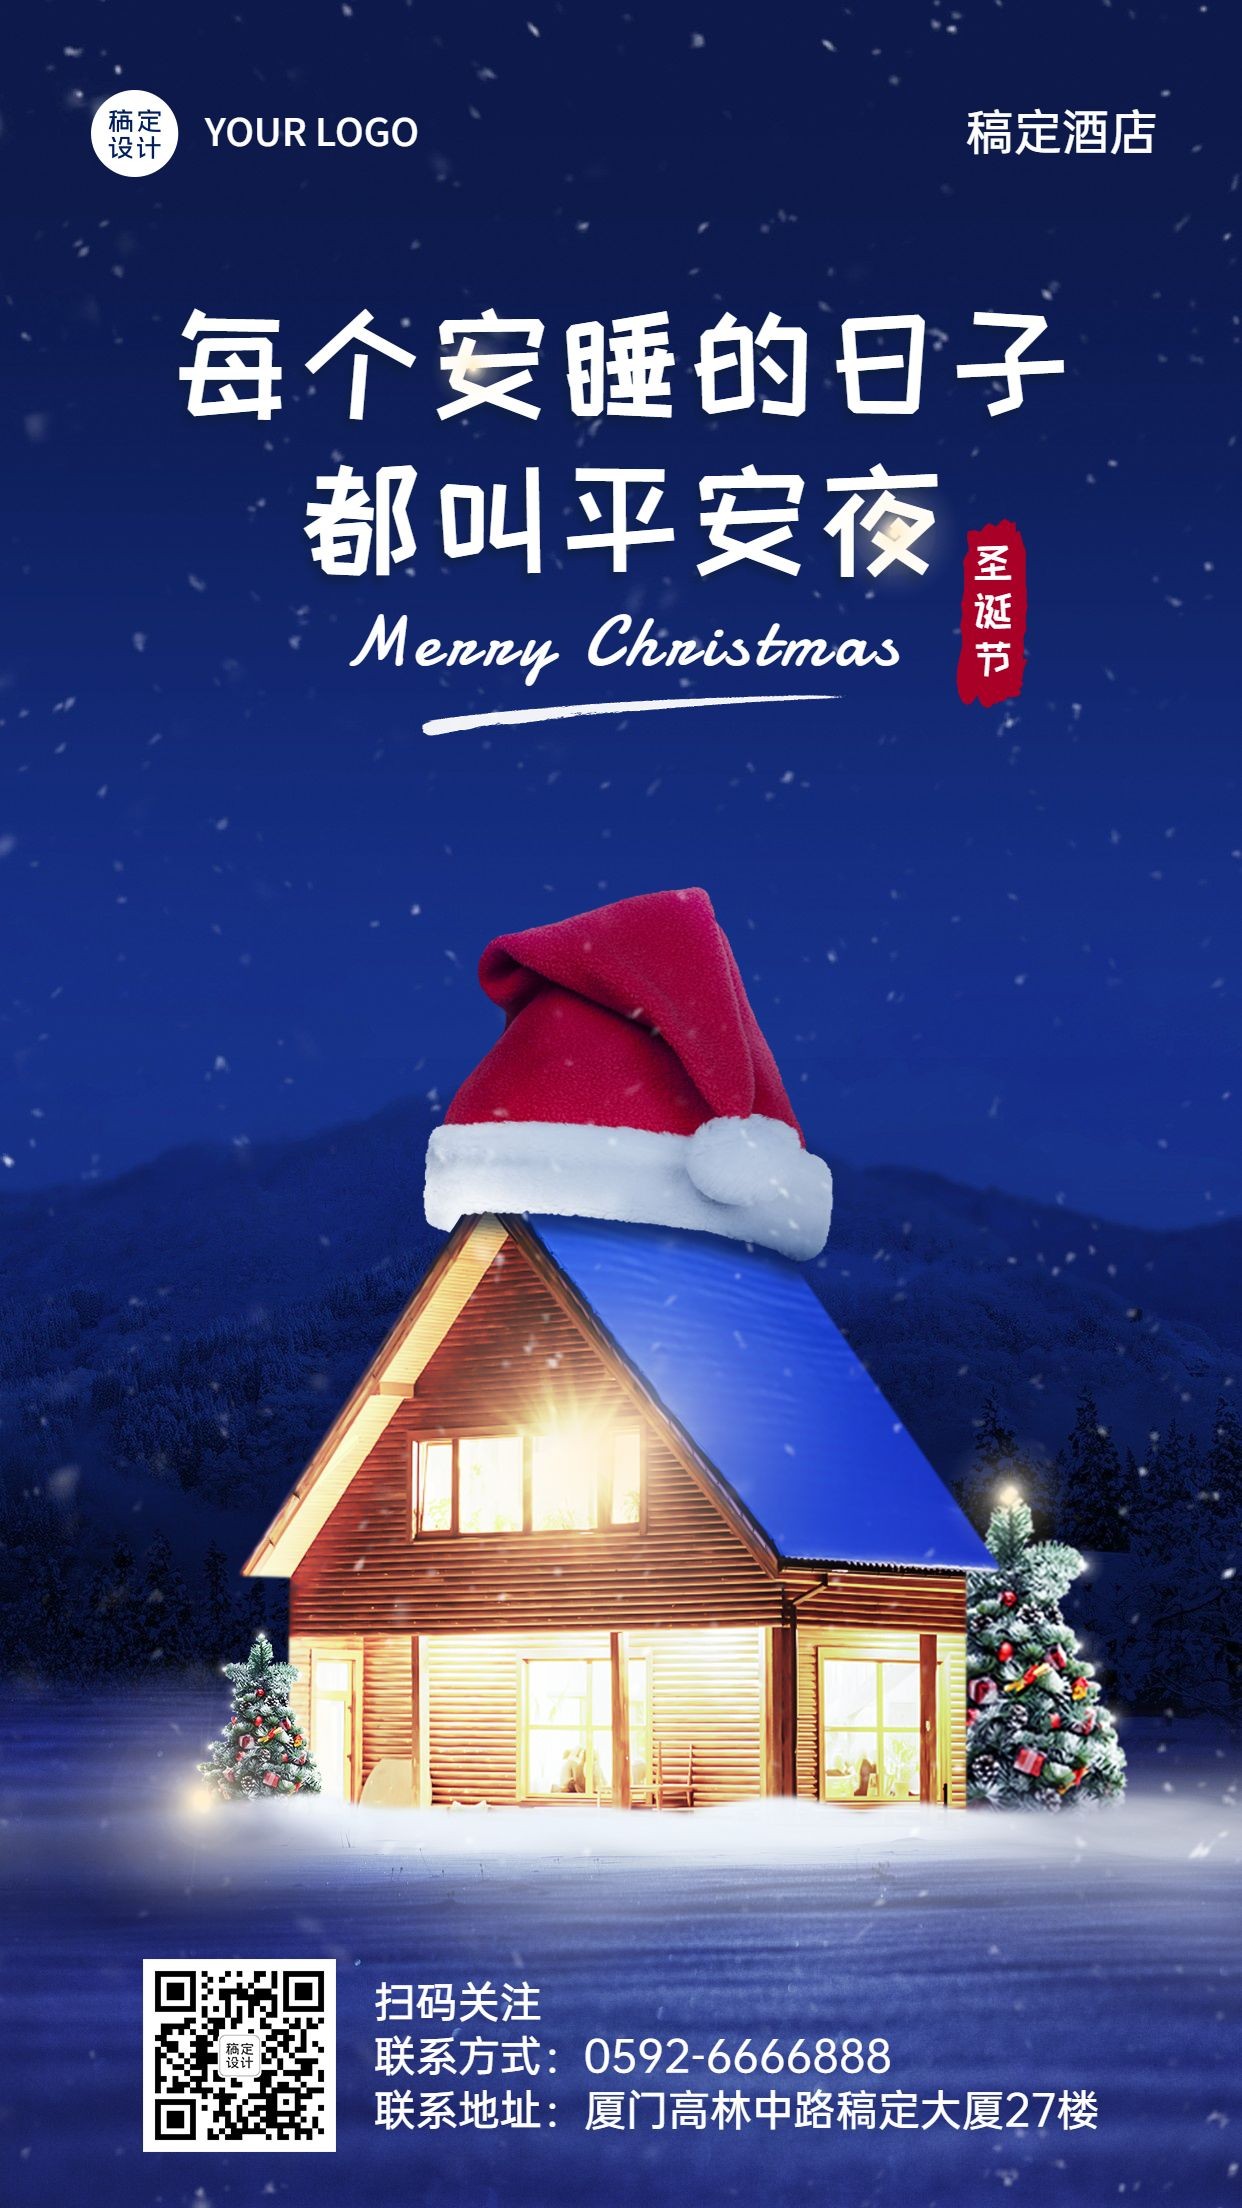 平安夜旅游祝福圣诞帽创意房子海报预览效果